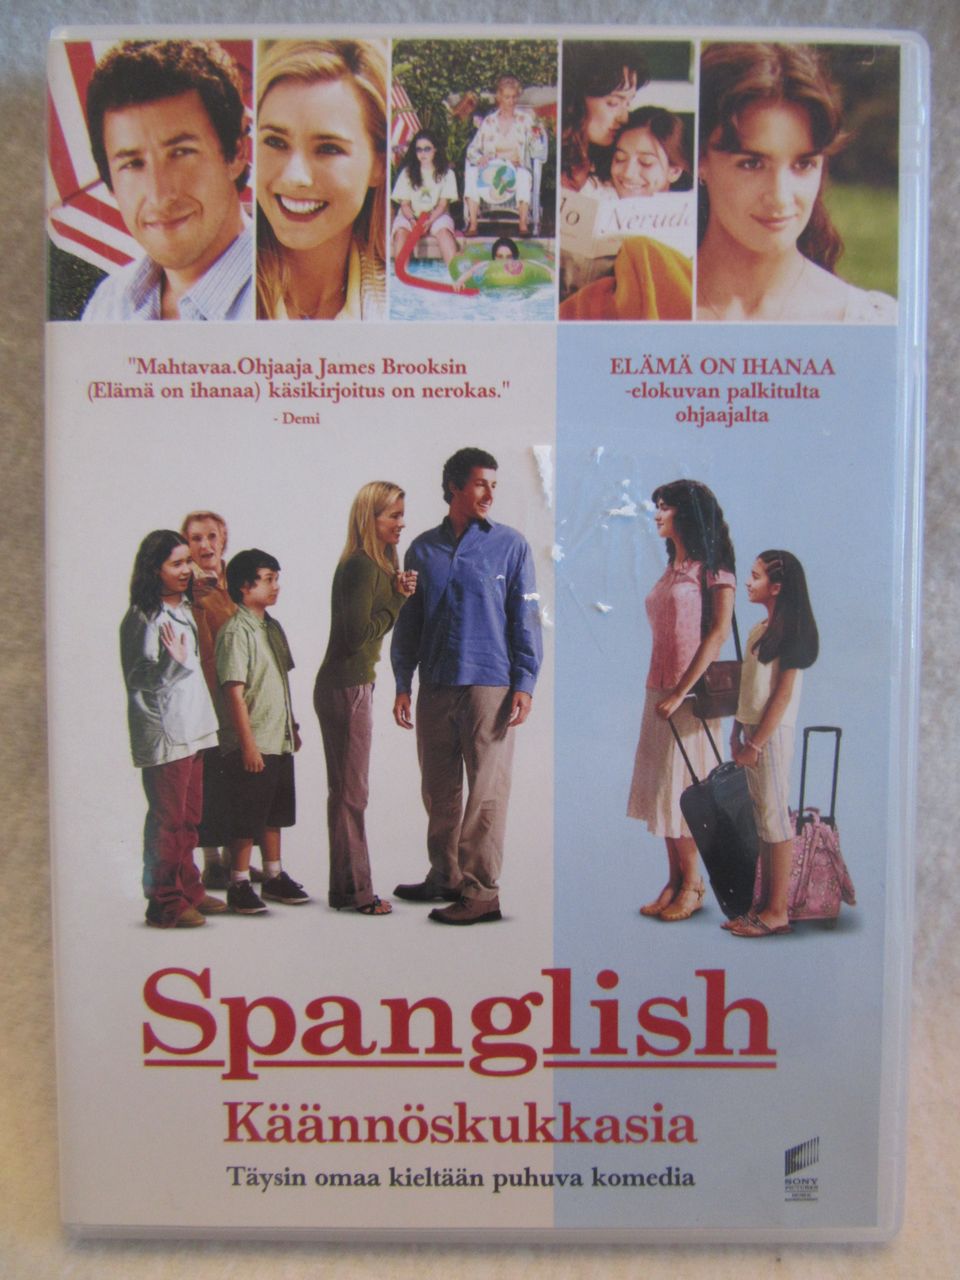 Spanglish – käännöskukkasia dvd